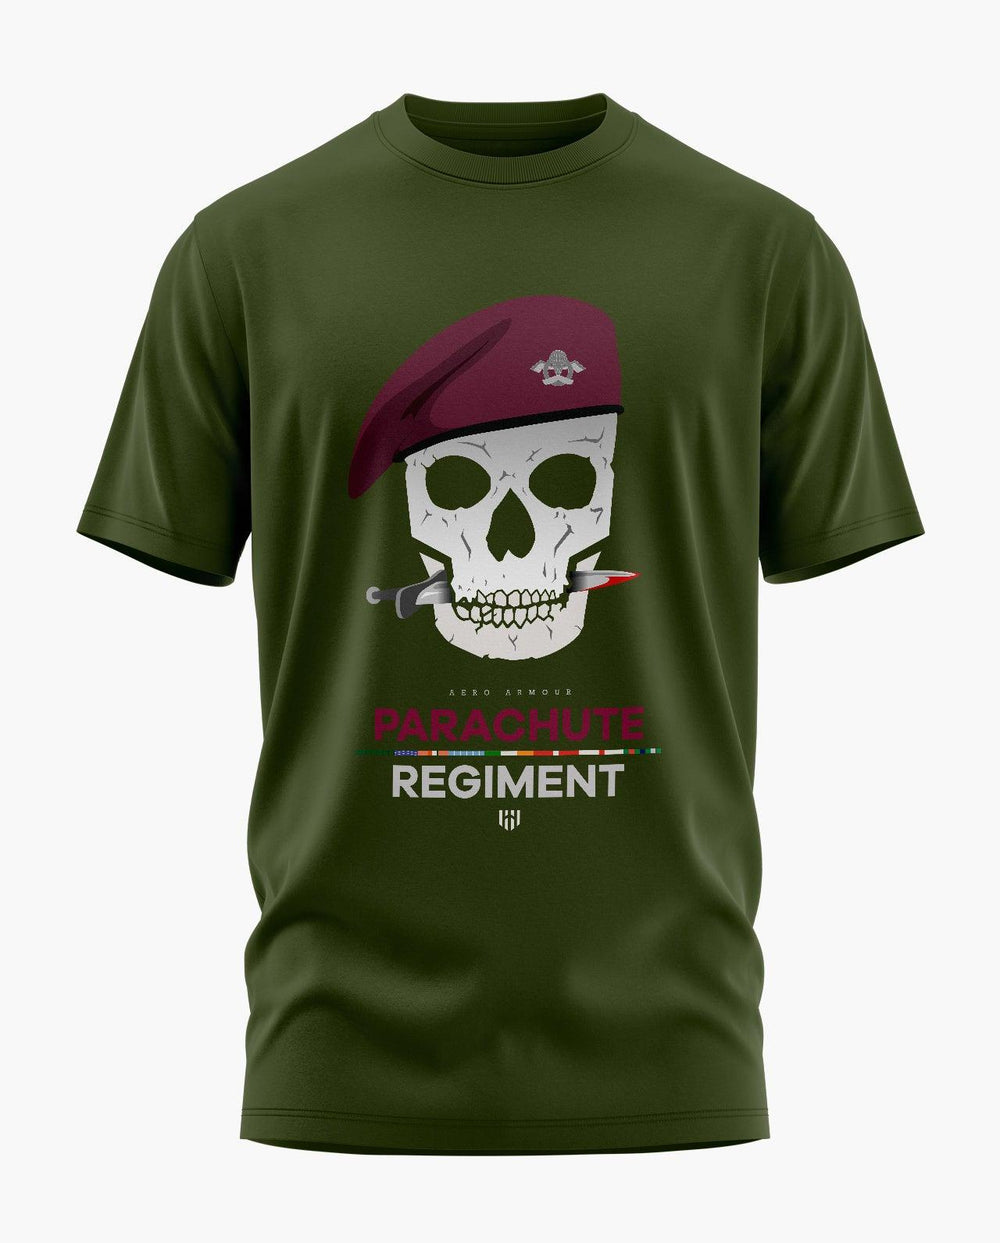 Para Regiment T-Shirt - Aero Armour